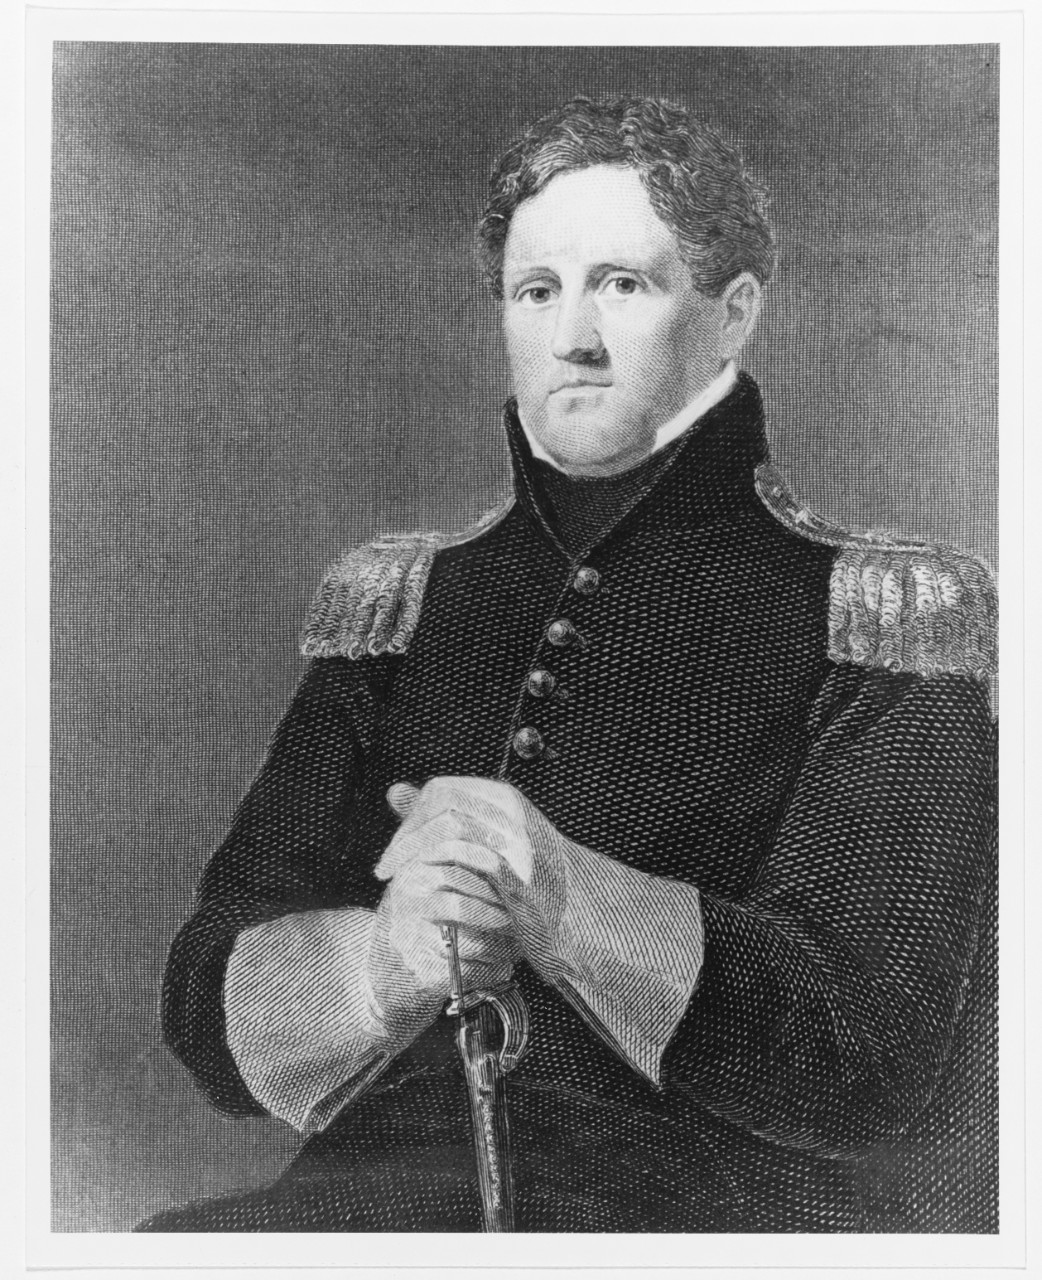 Major General Winfield Scott, U.S. Army